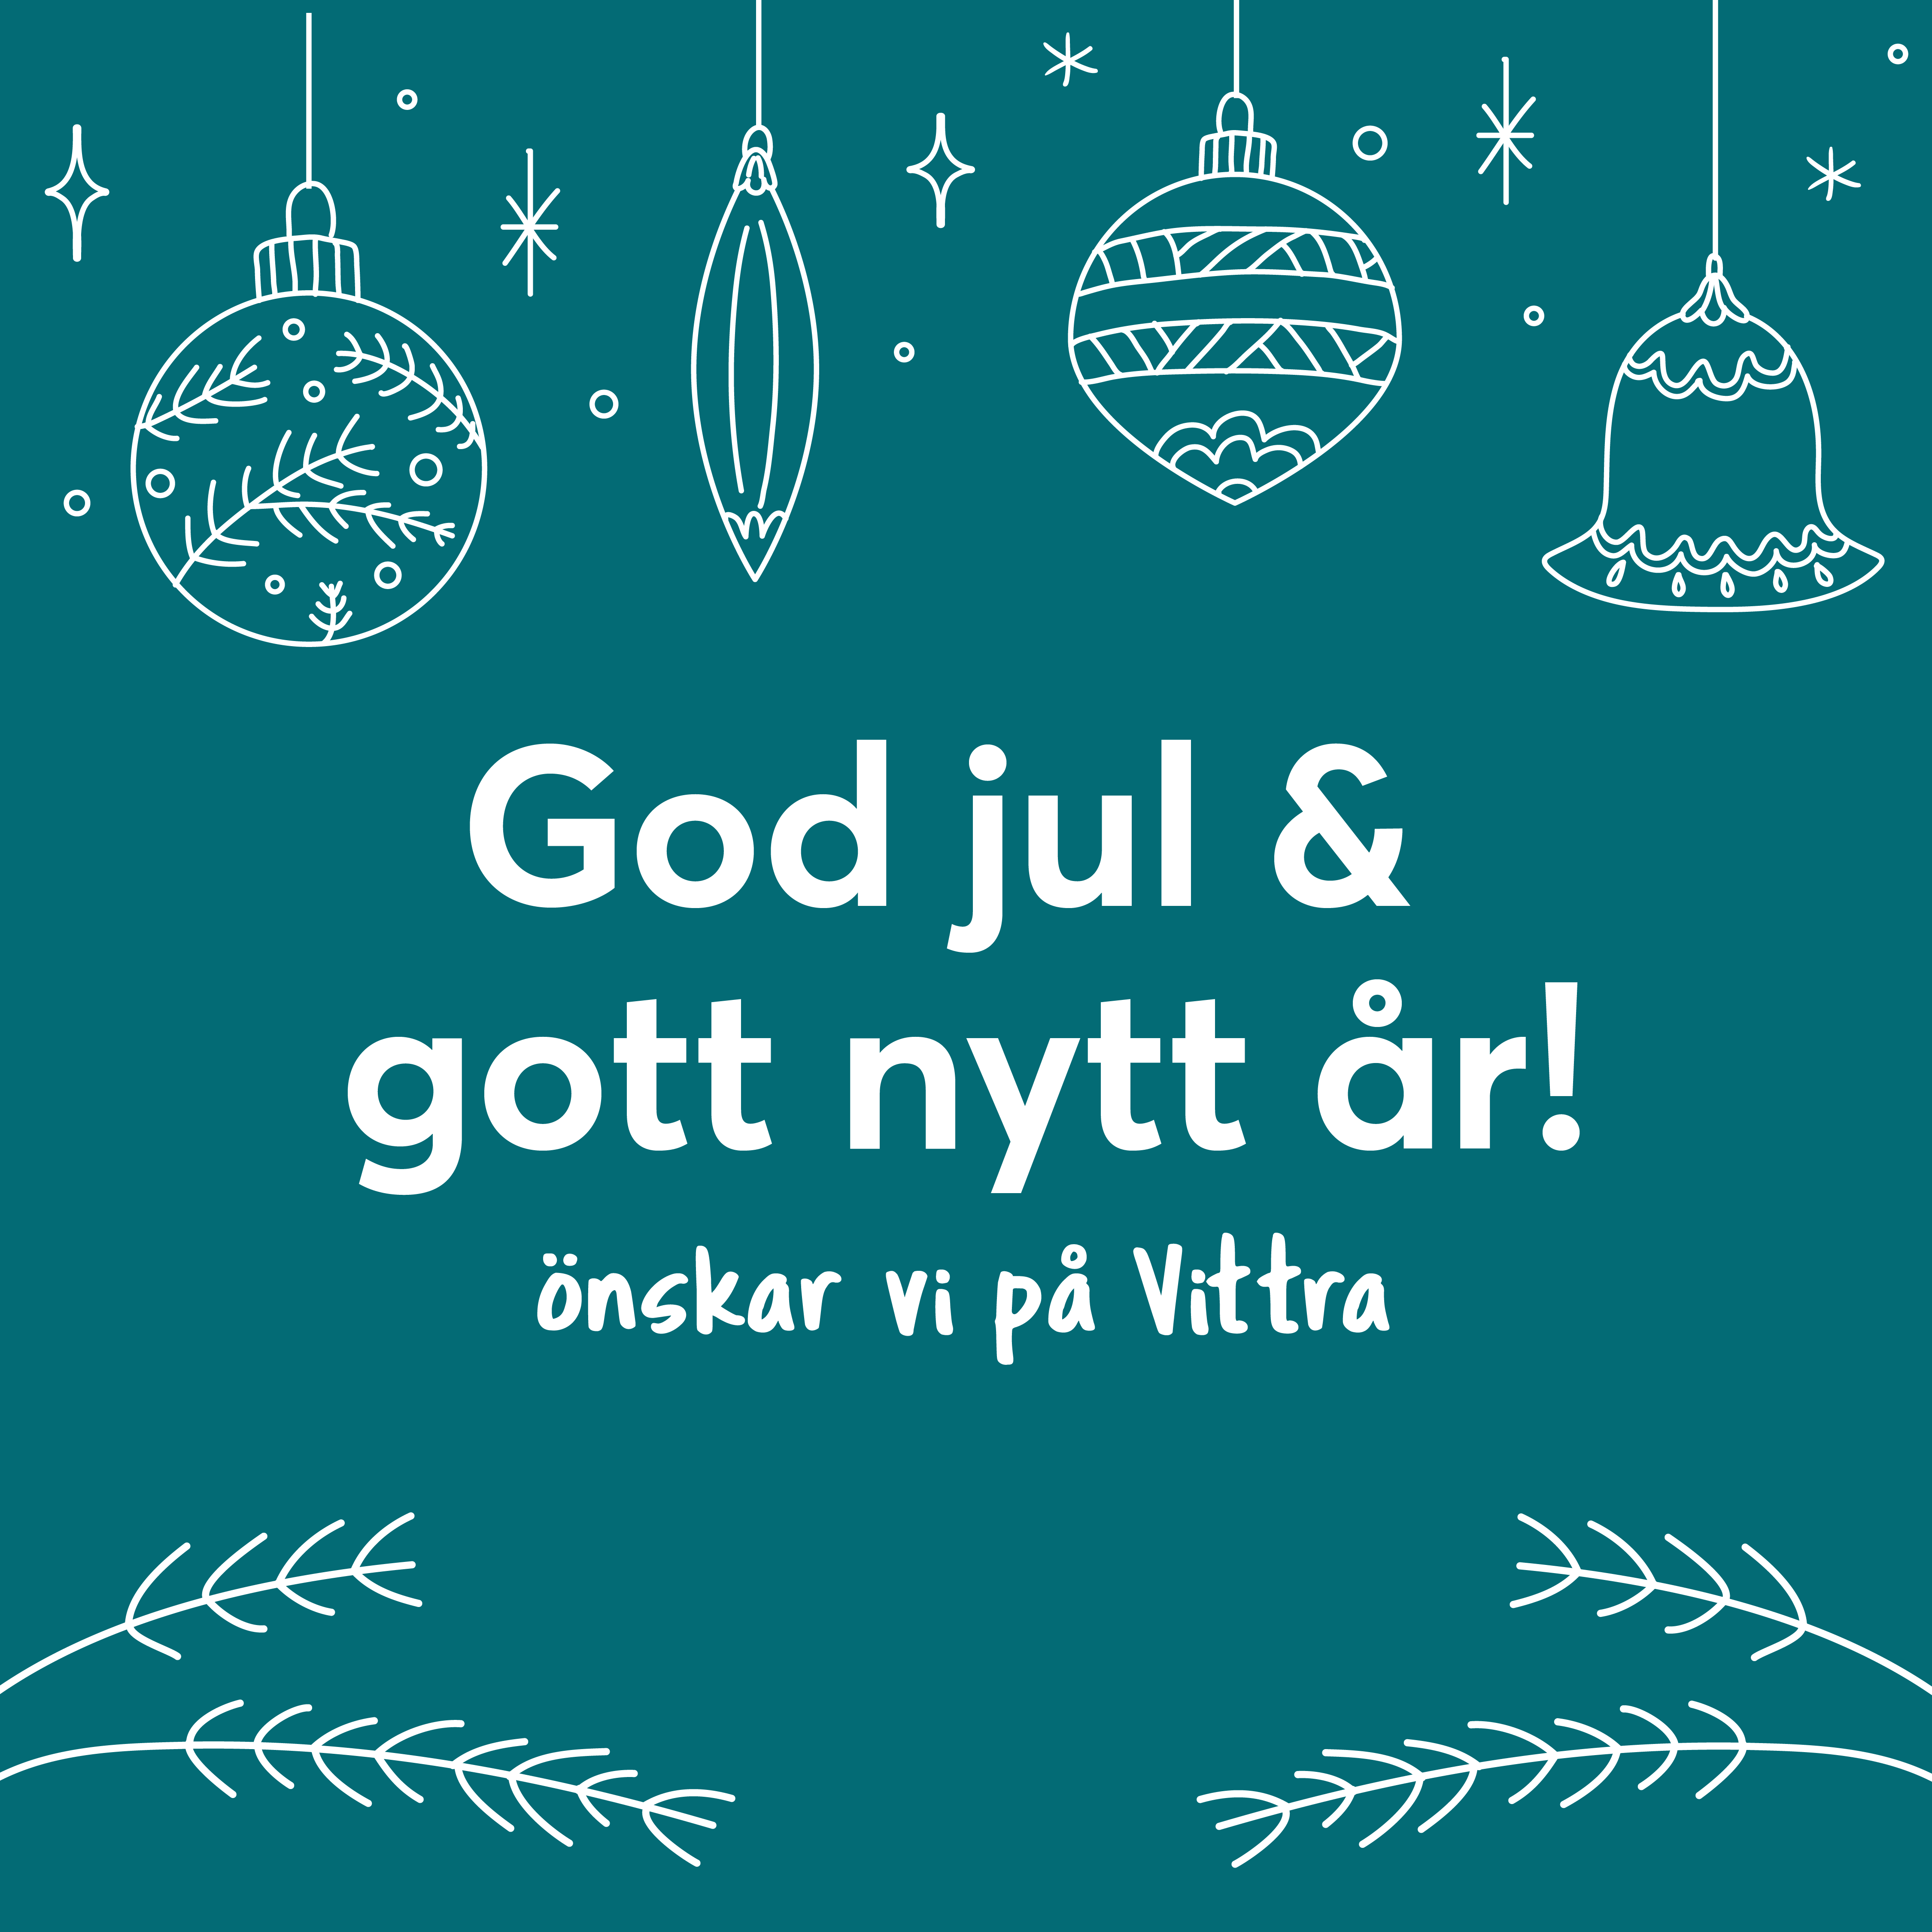 God jul och gott nytt år önskar Vittra!